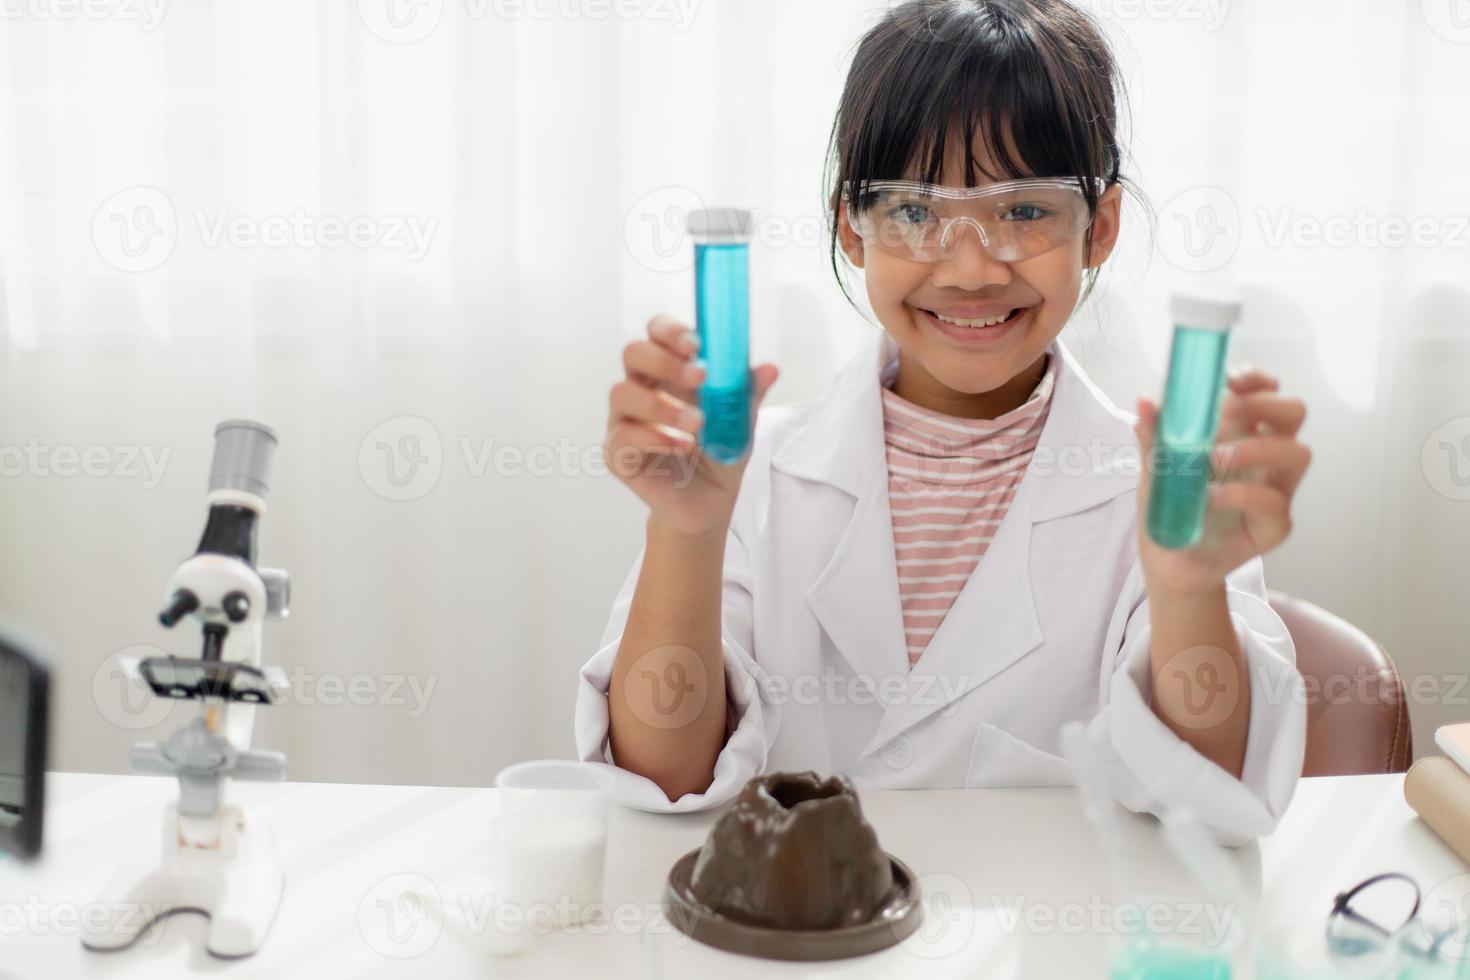 educação, ciência, química e conceito de crianças - crianças ou estudantes com tubo de ensaio fazendo experimento no laboratório da escola foto